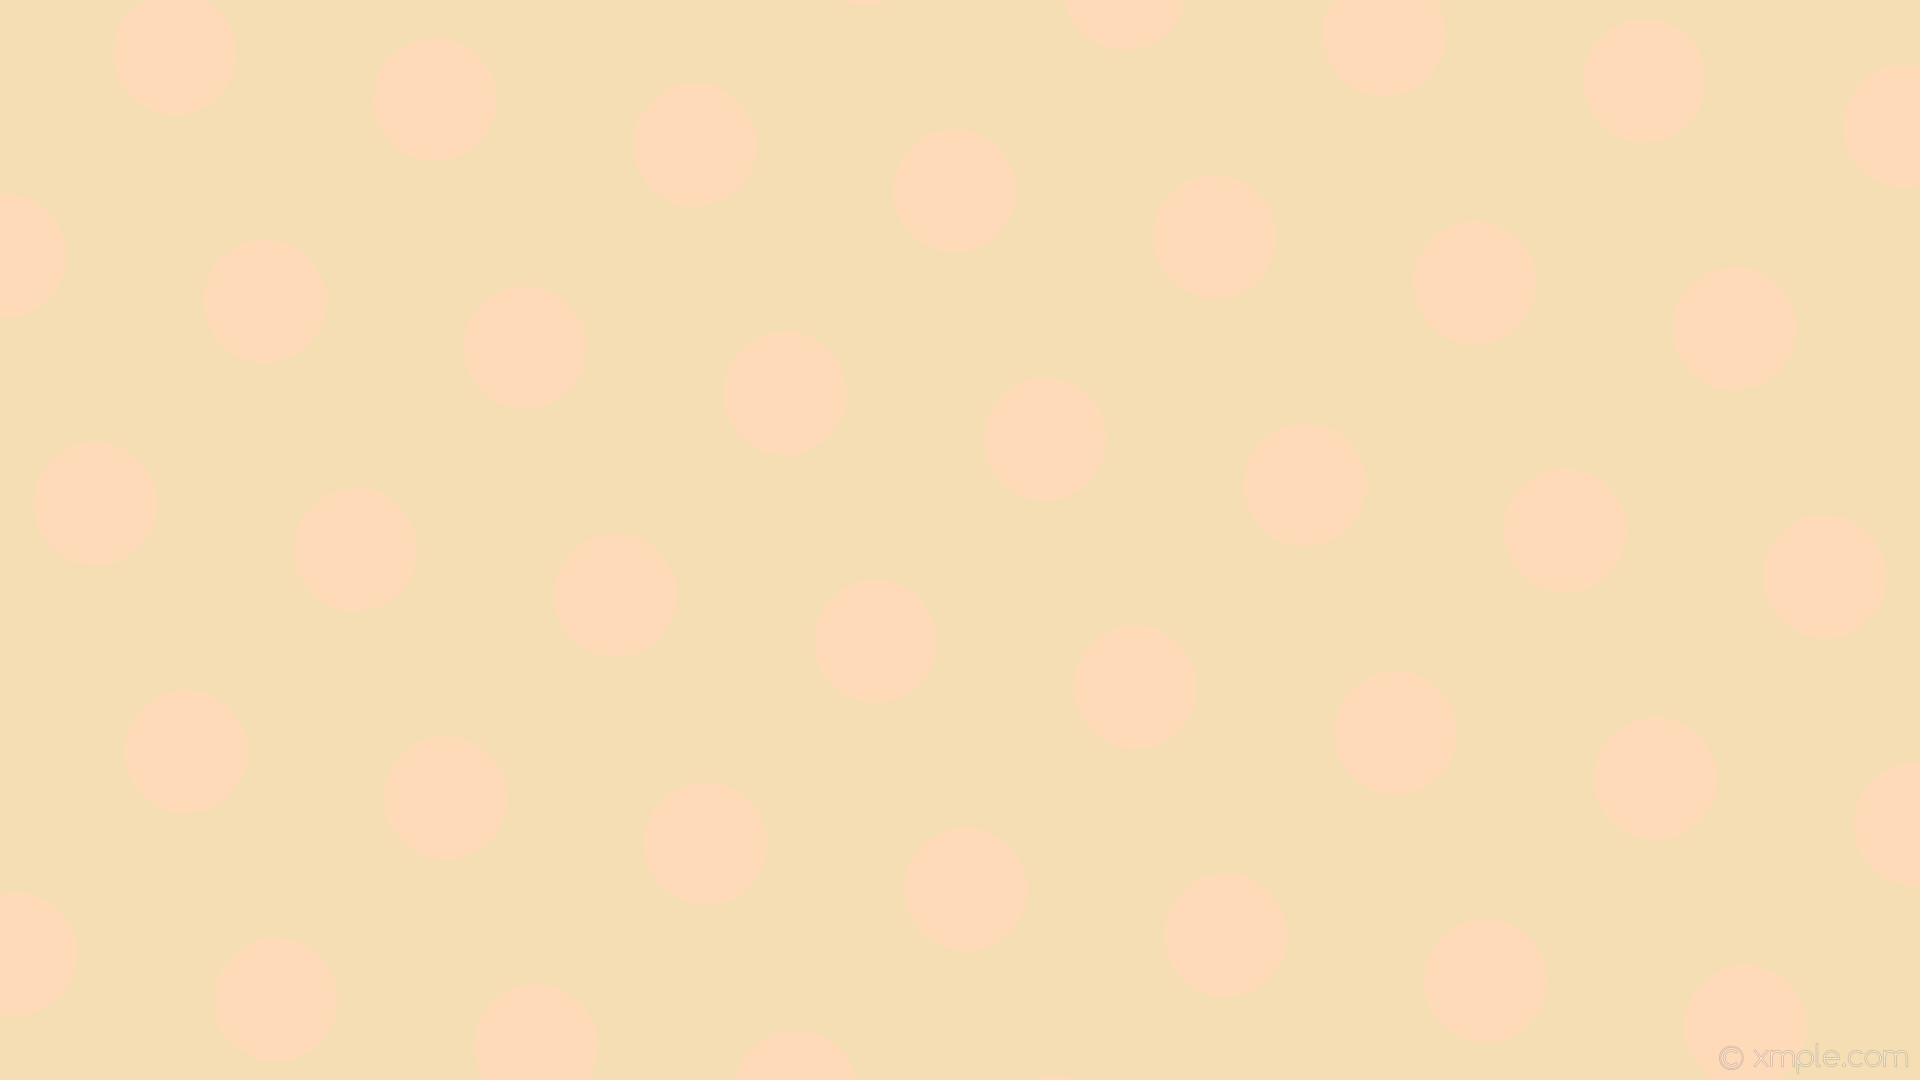 1920x1080 wallpaper brown yellow dots polka hexagon wheat peach puff #f5deb3 #ffdab9  diagonal 50Â°